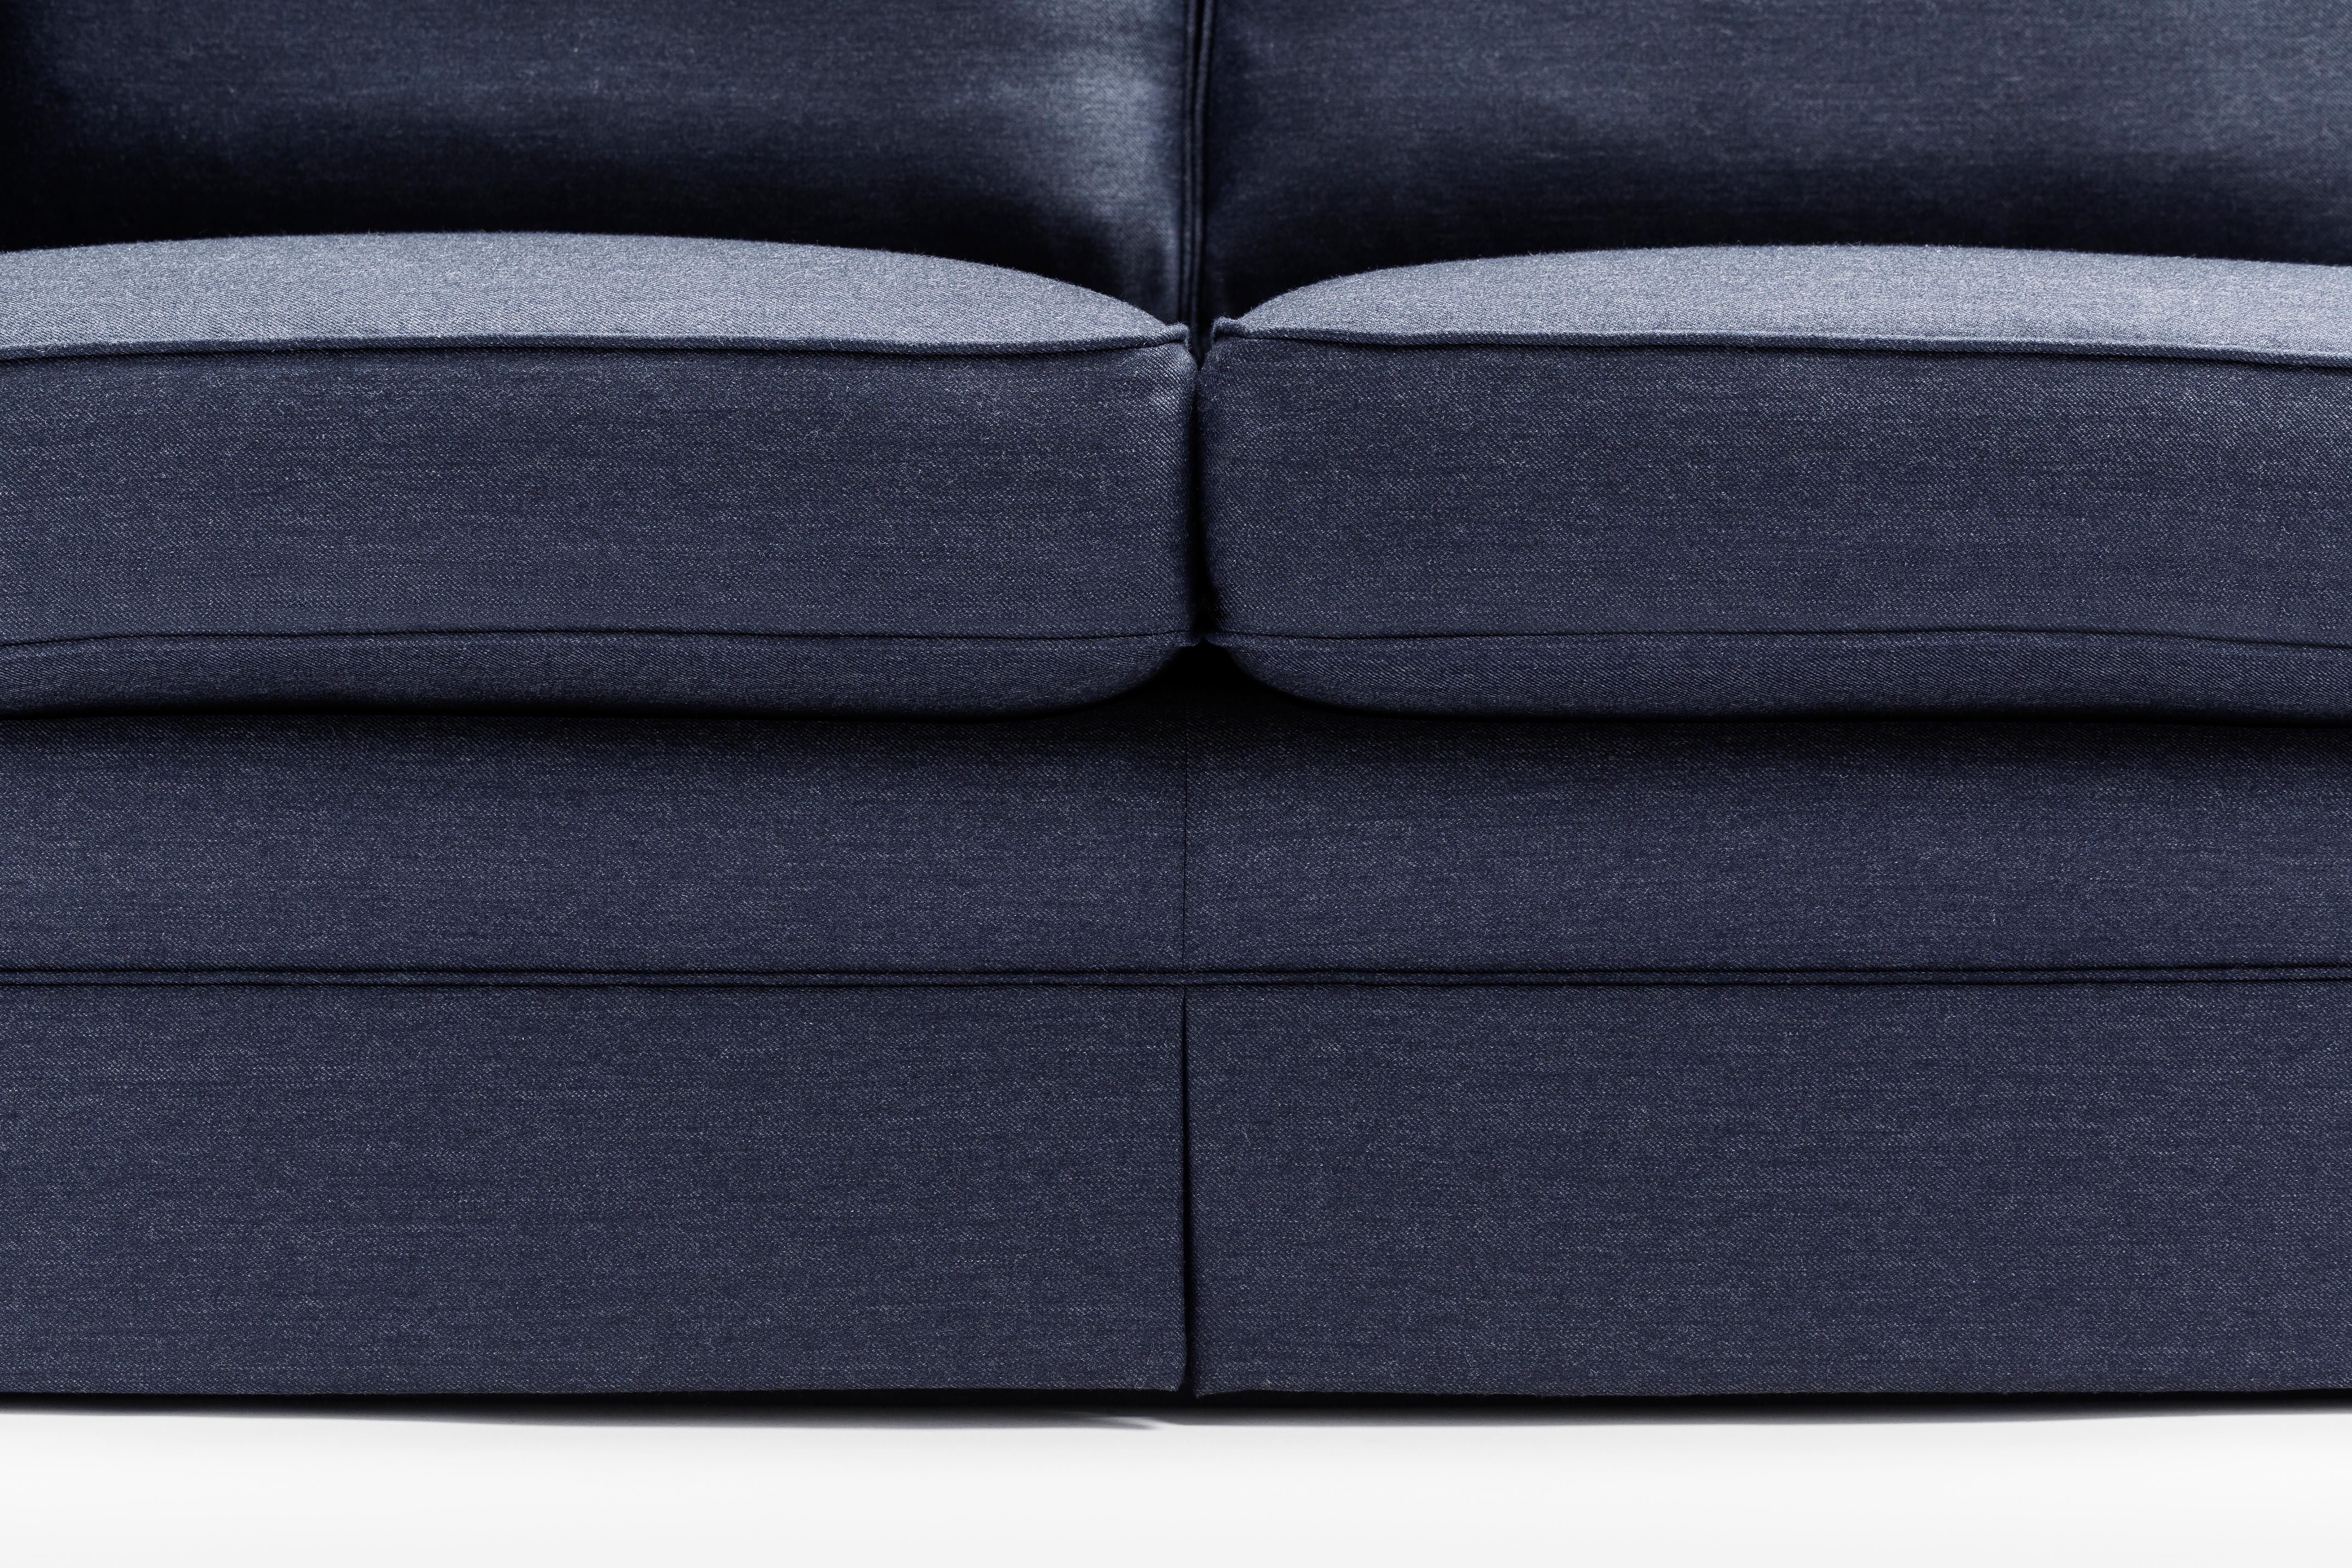 Wir möchten, dass Sie Ihren perfekten Partner kennen lernen: das luxuriöse Enchanté Modular Sofa mit seinem Gestell aus massiver Buche und der fein gearbeiteten Polsterung aus reinem Wollstoff. 

Der Enchanté bringt die traditionelle Sockelbasis